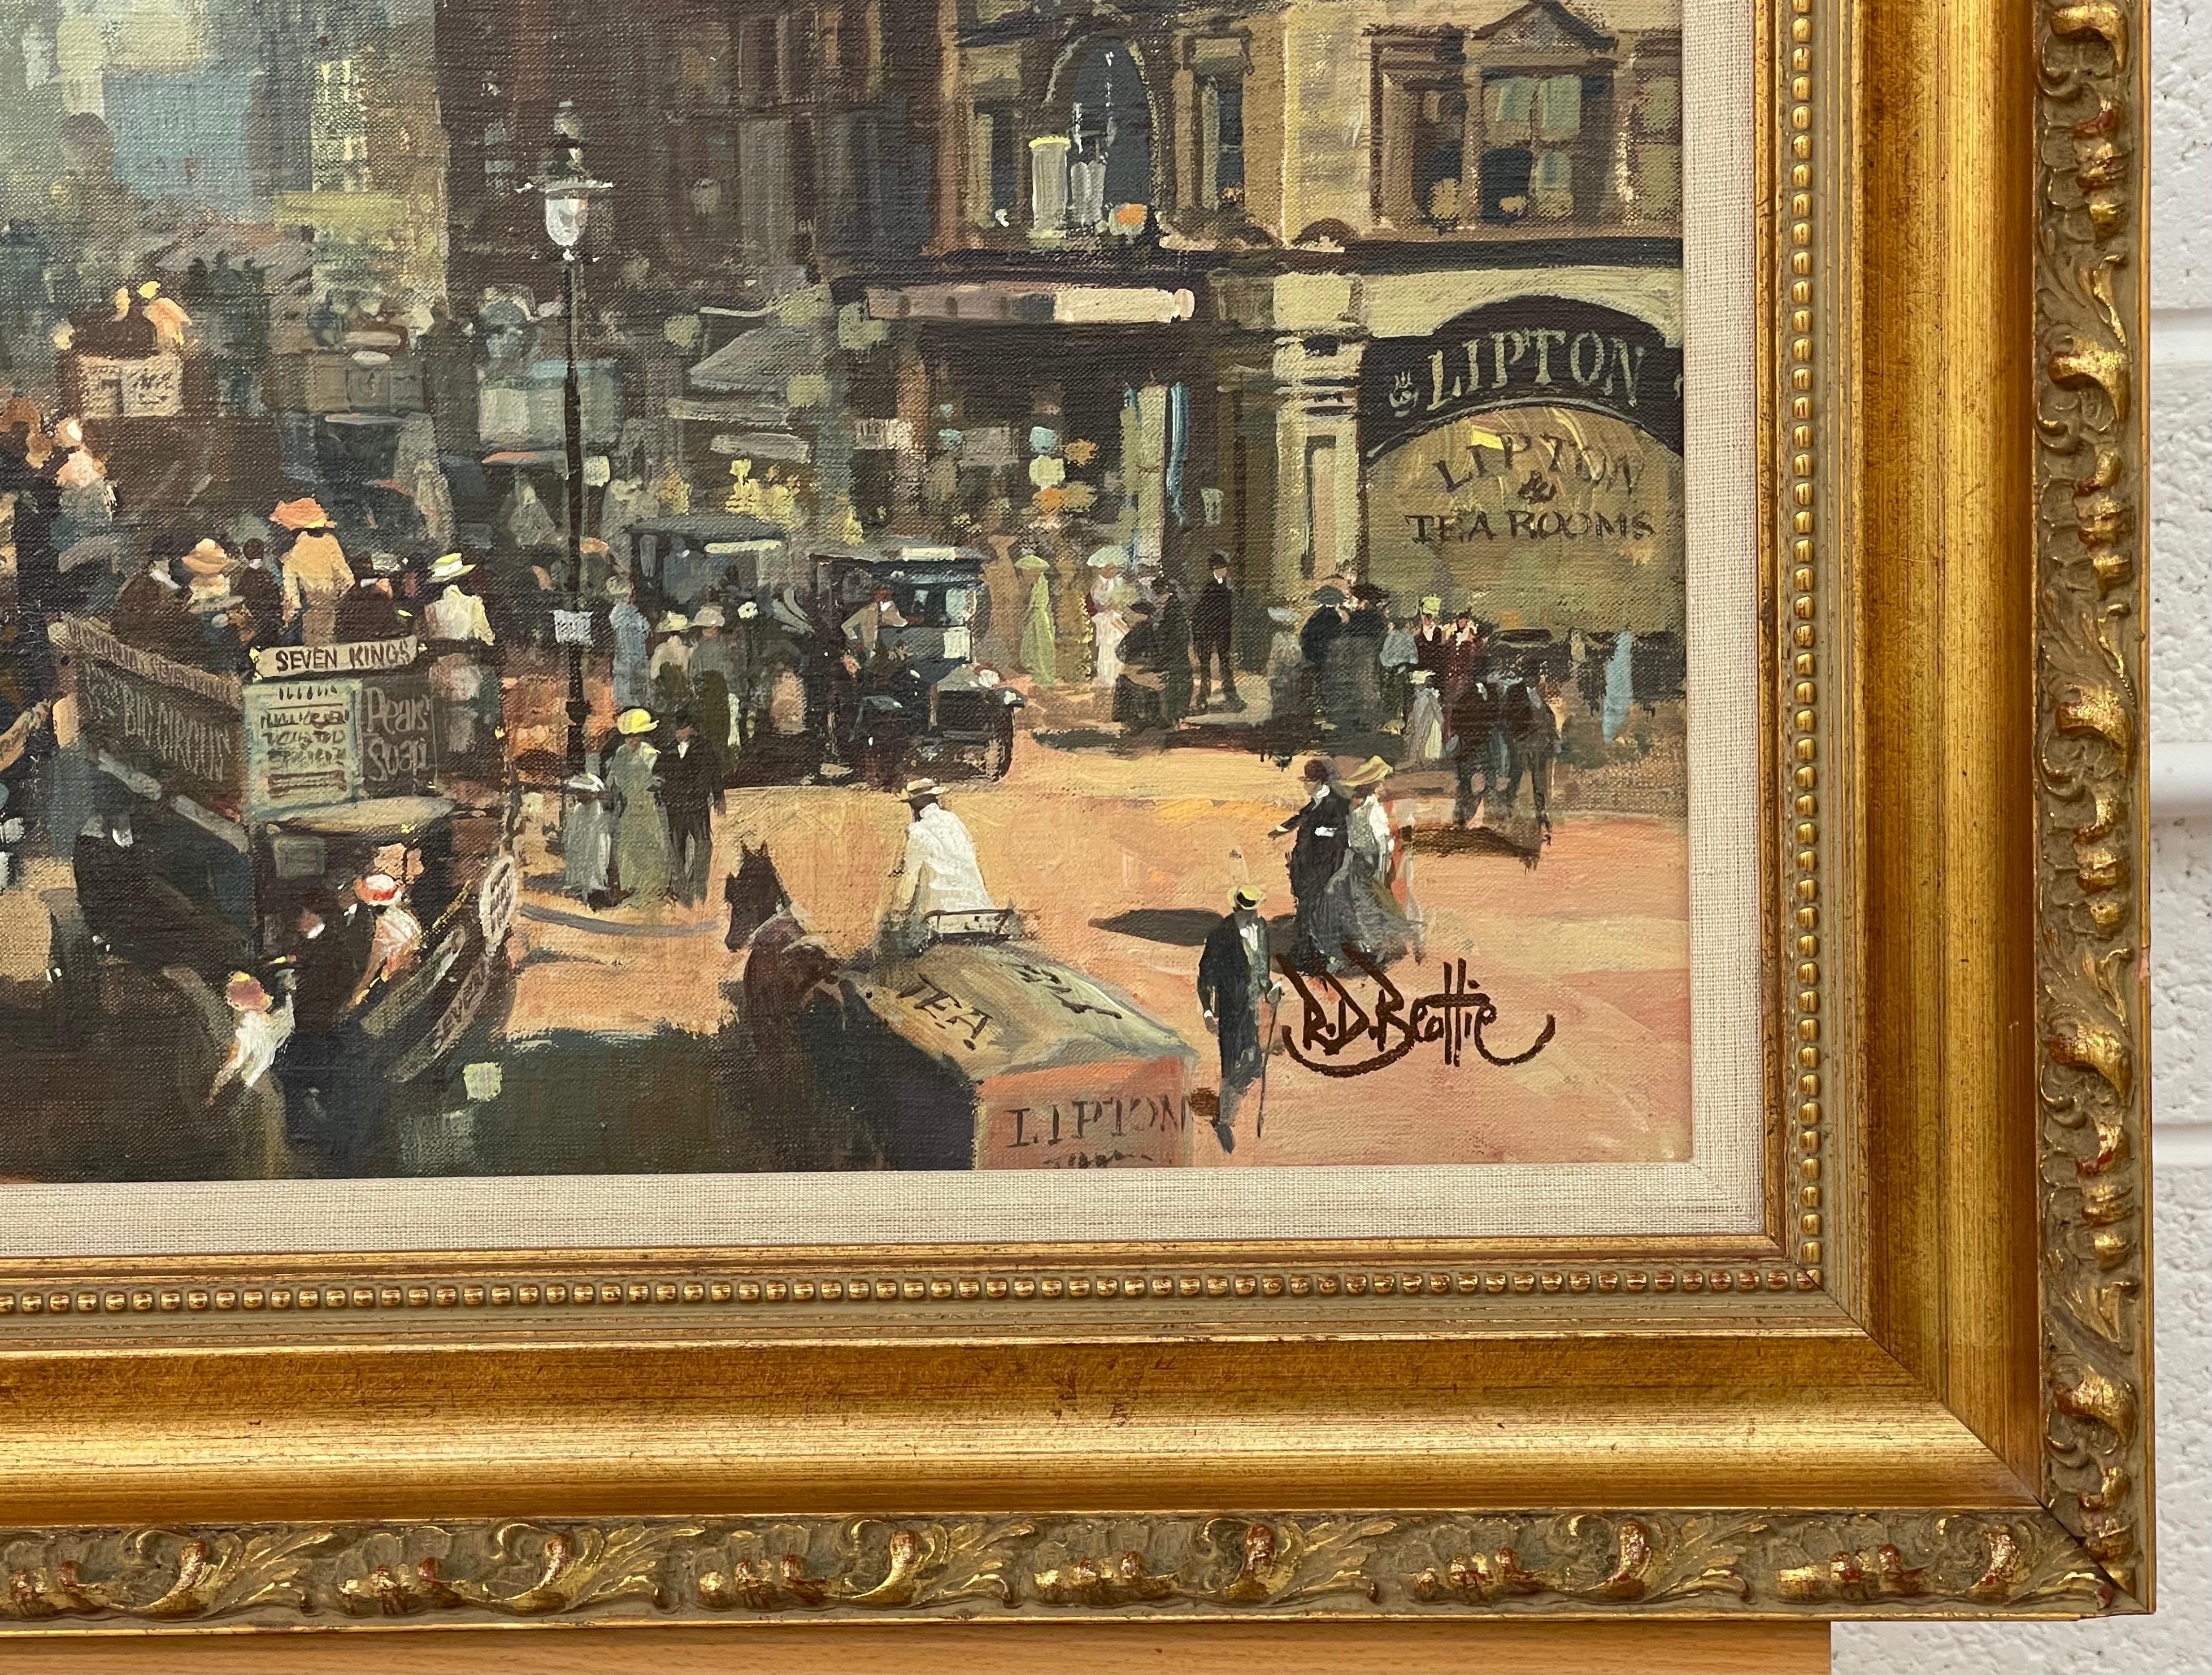 Une peinture à l'huile originale de High Holborn London en 1910 par l'artiste irlandais impressionniste moderne, Robert D. Beattie (1900-1979). Le tableau illustre un moment historique de Londres à l'époque édouardienne. 

L'œuvre d'art mesure 18 x